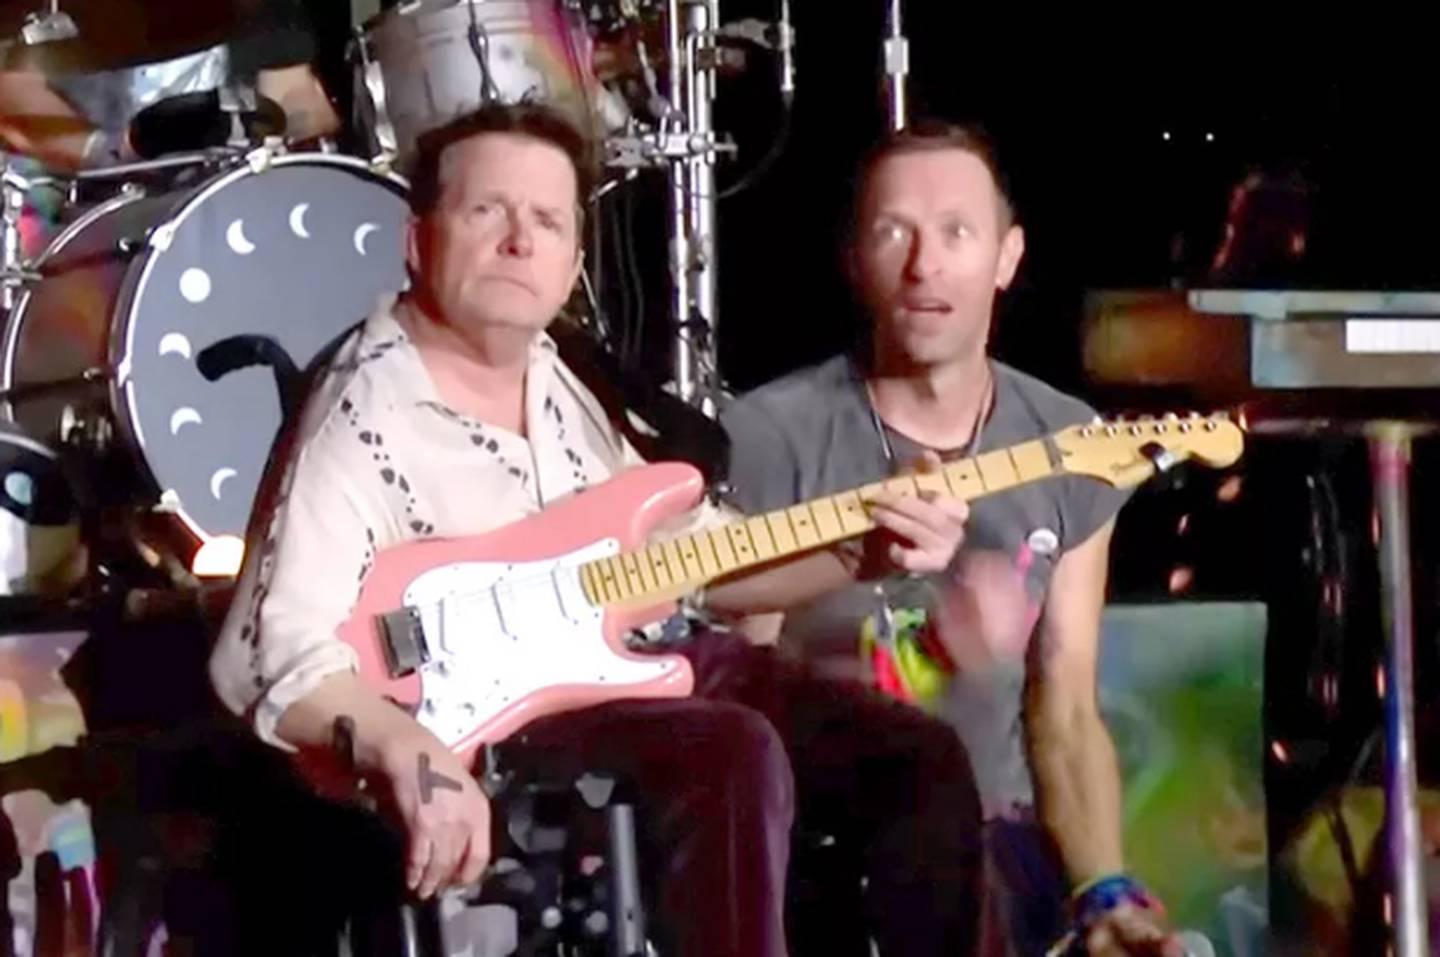 El actor Michael J Fox se robó el show durante la presentación de Coldplay en un festival en Inglaterra.